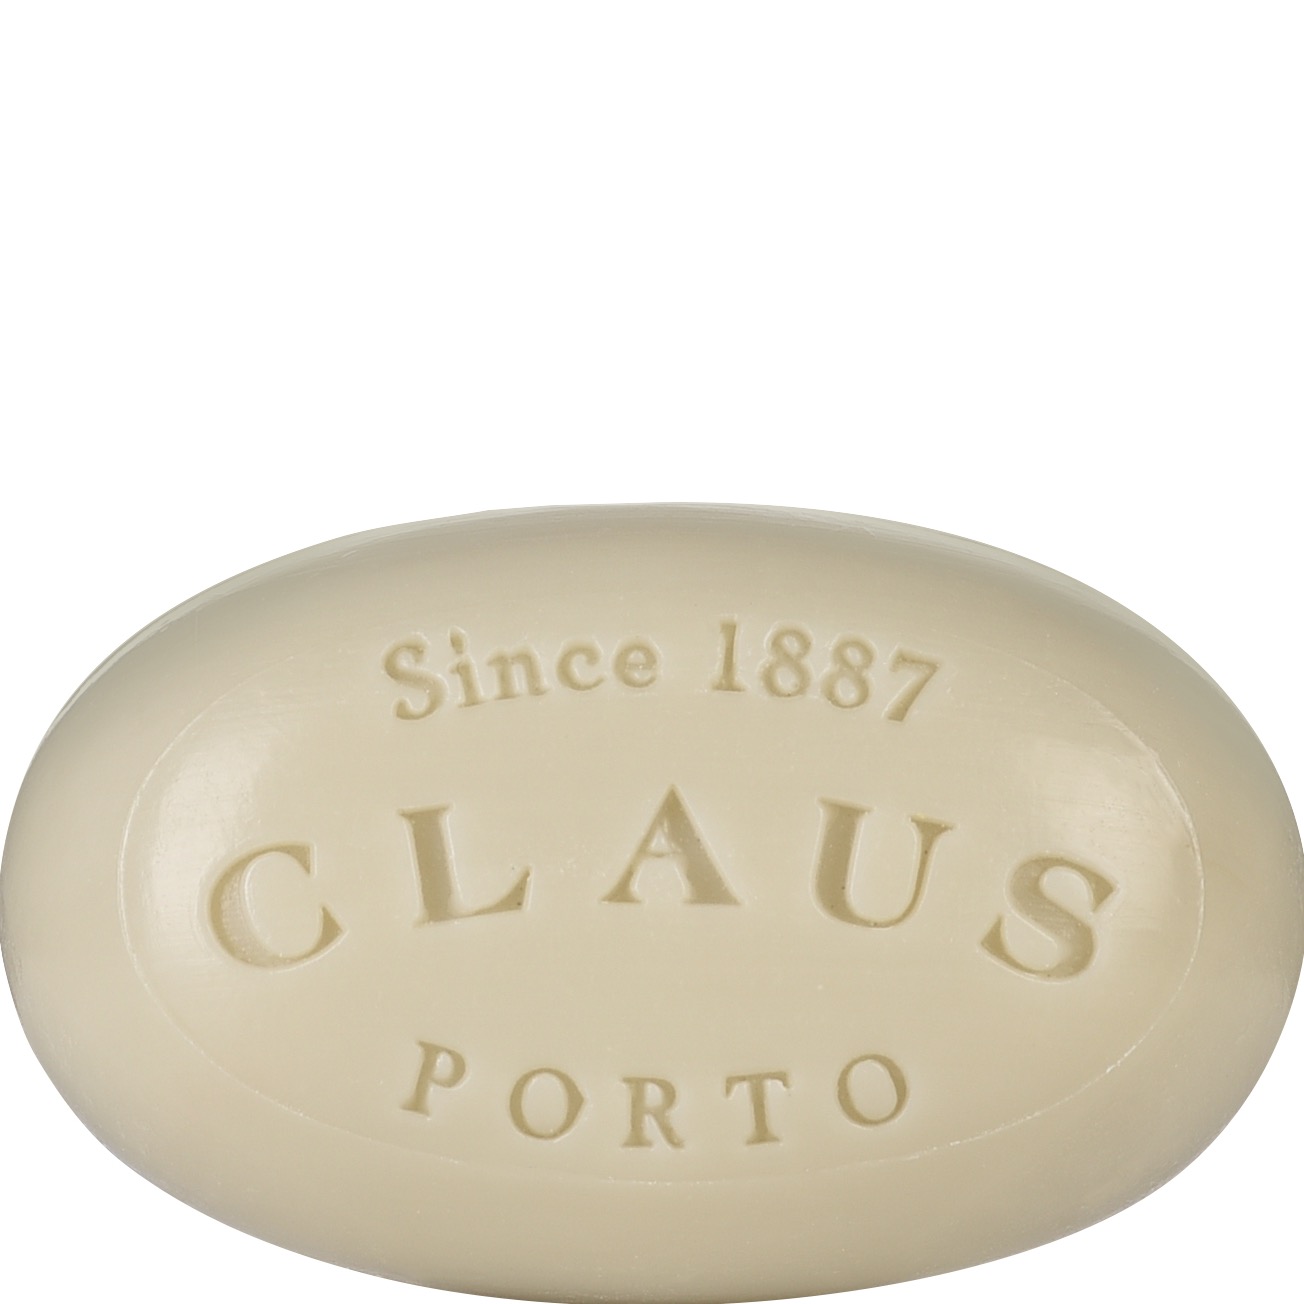 Claus Porto Mini Soap Deco Lime Basil 50g - 1.2 - CP-MS113